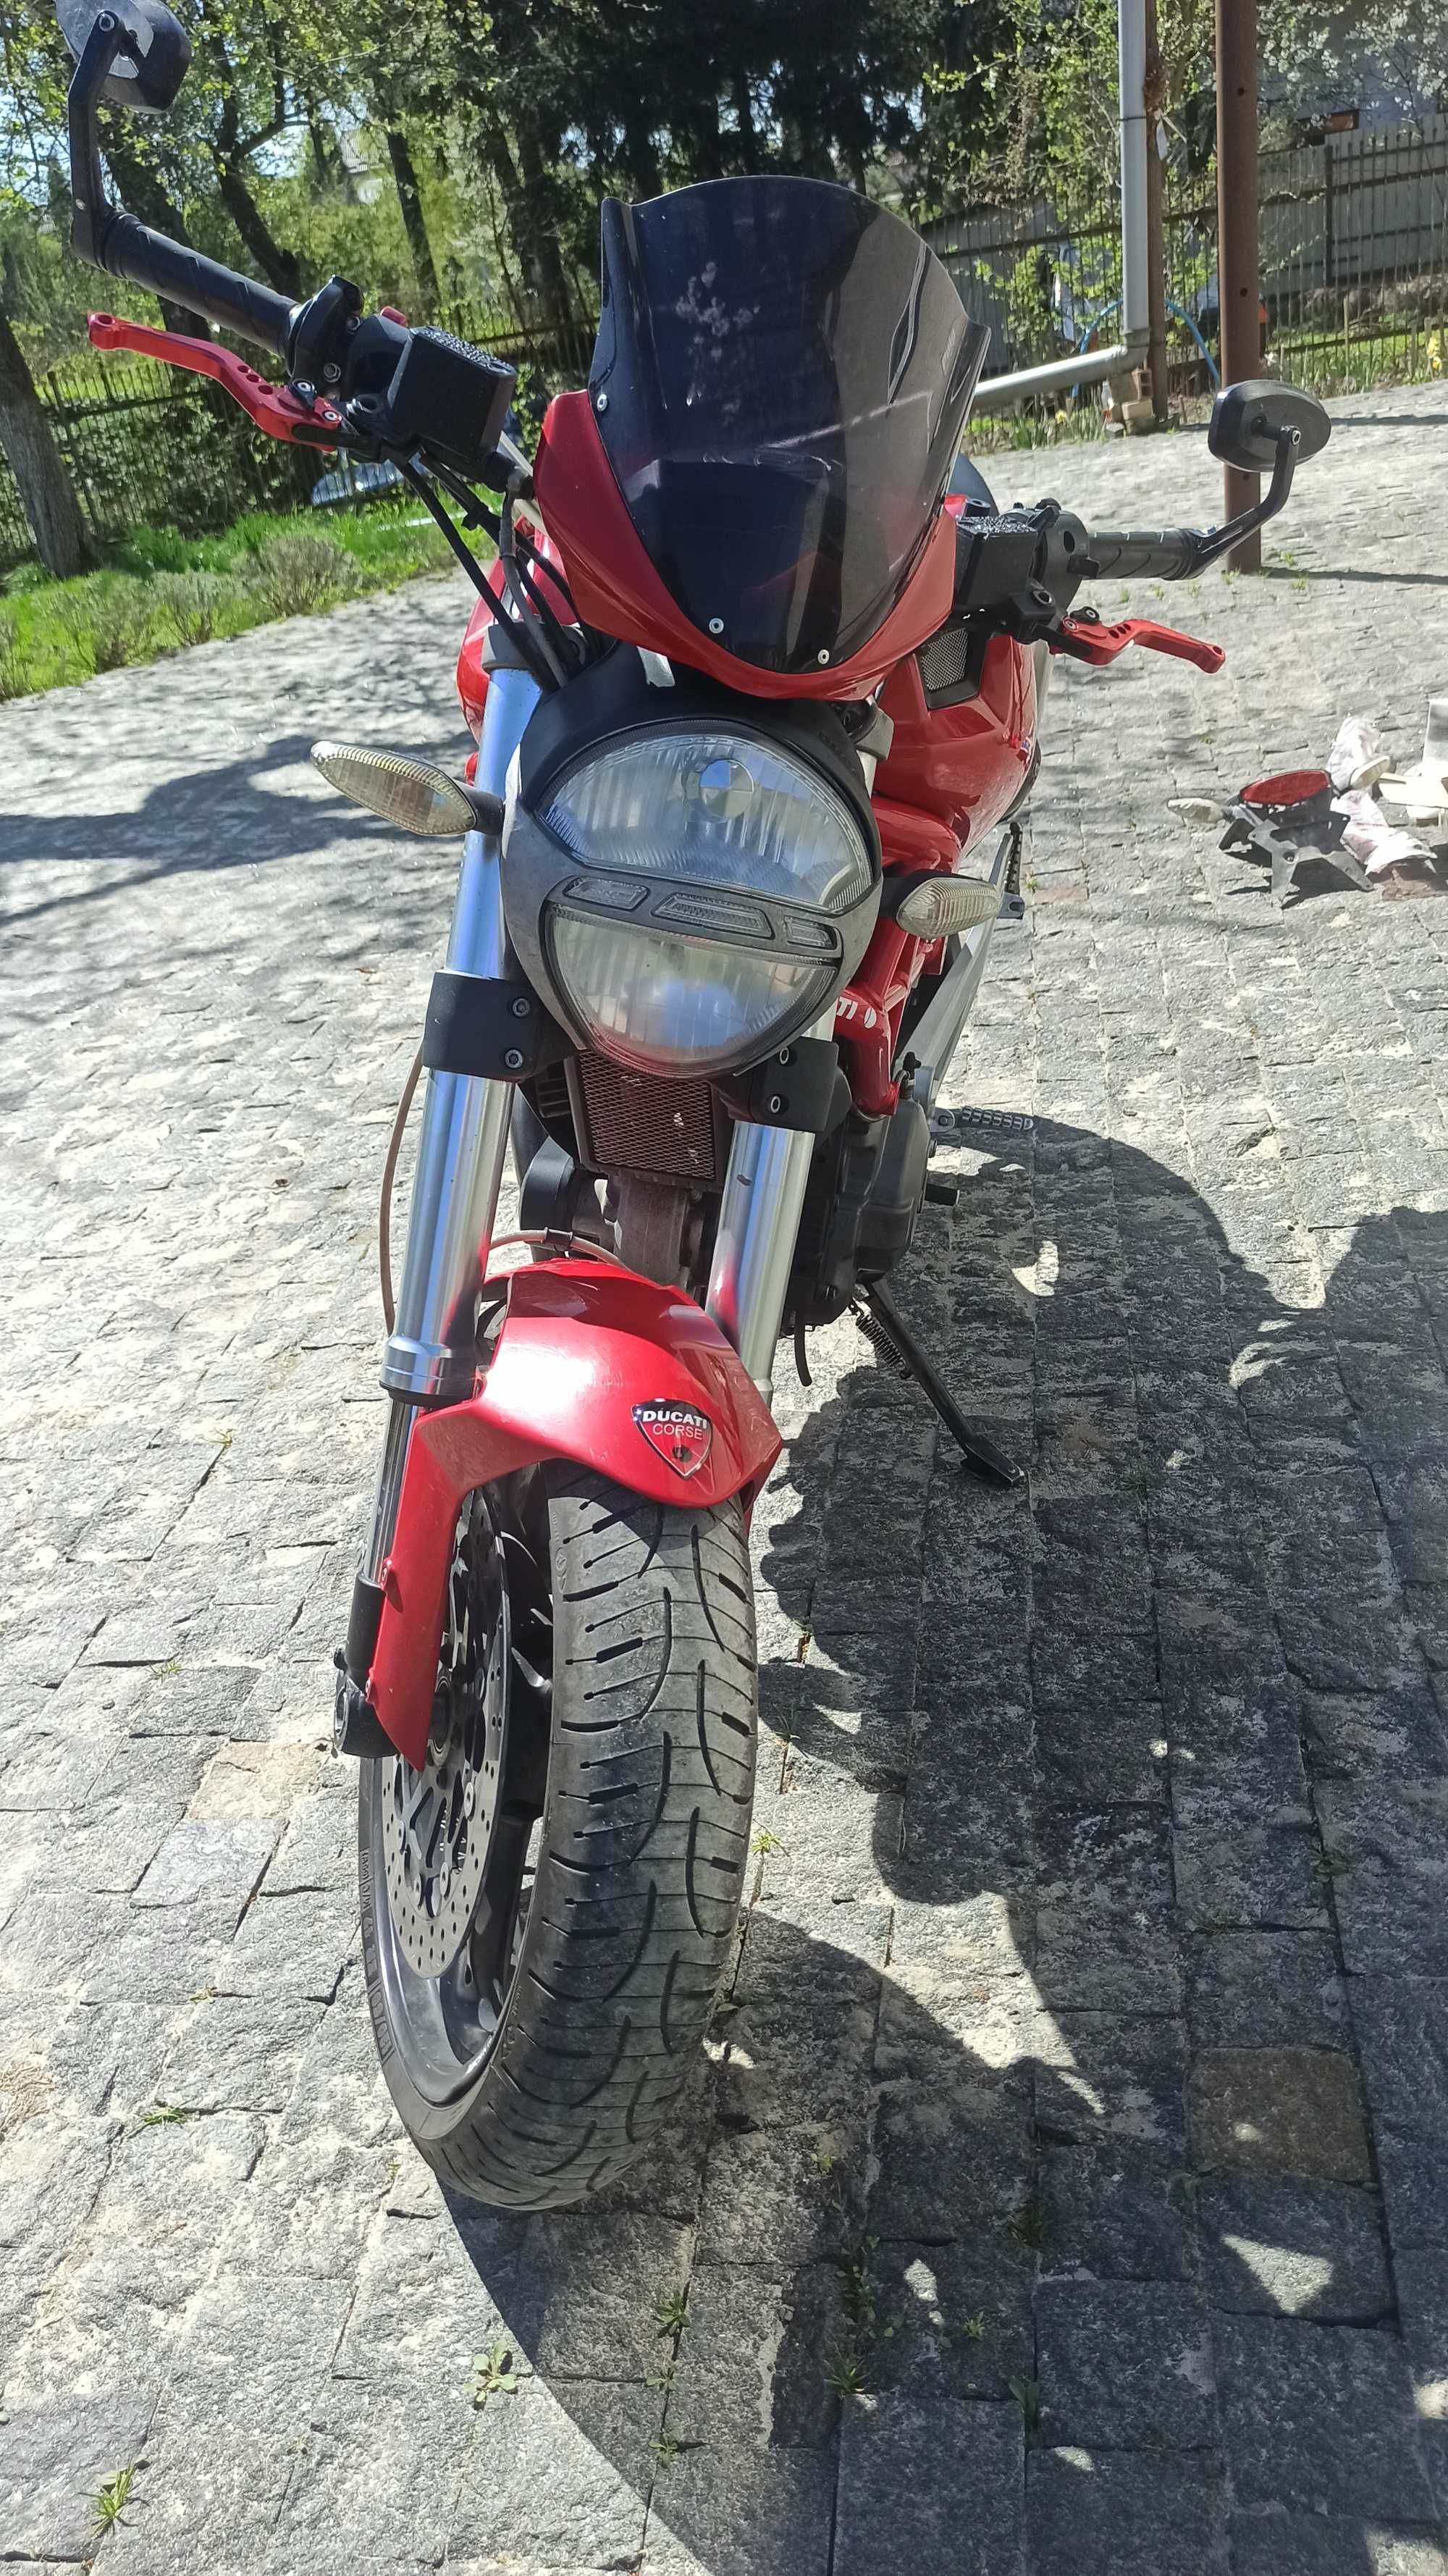 Ducati Monster 696 2008